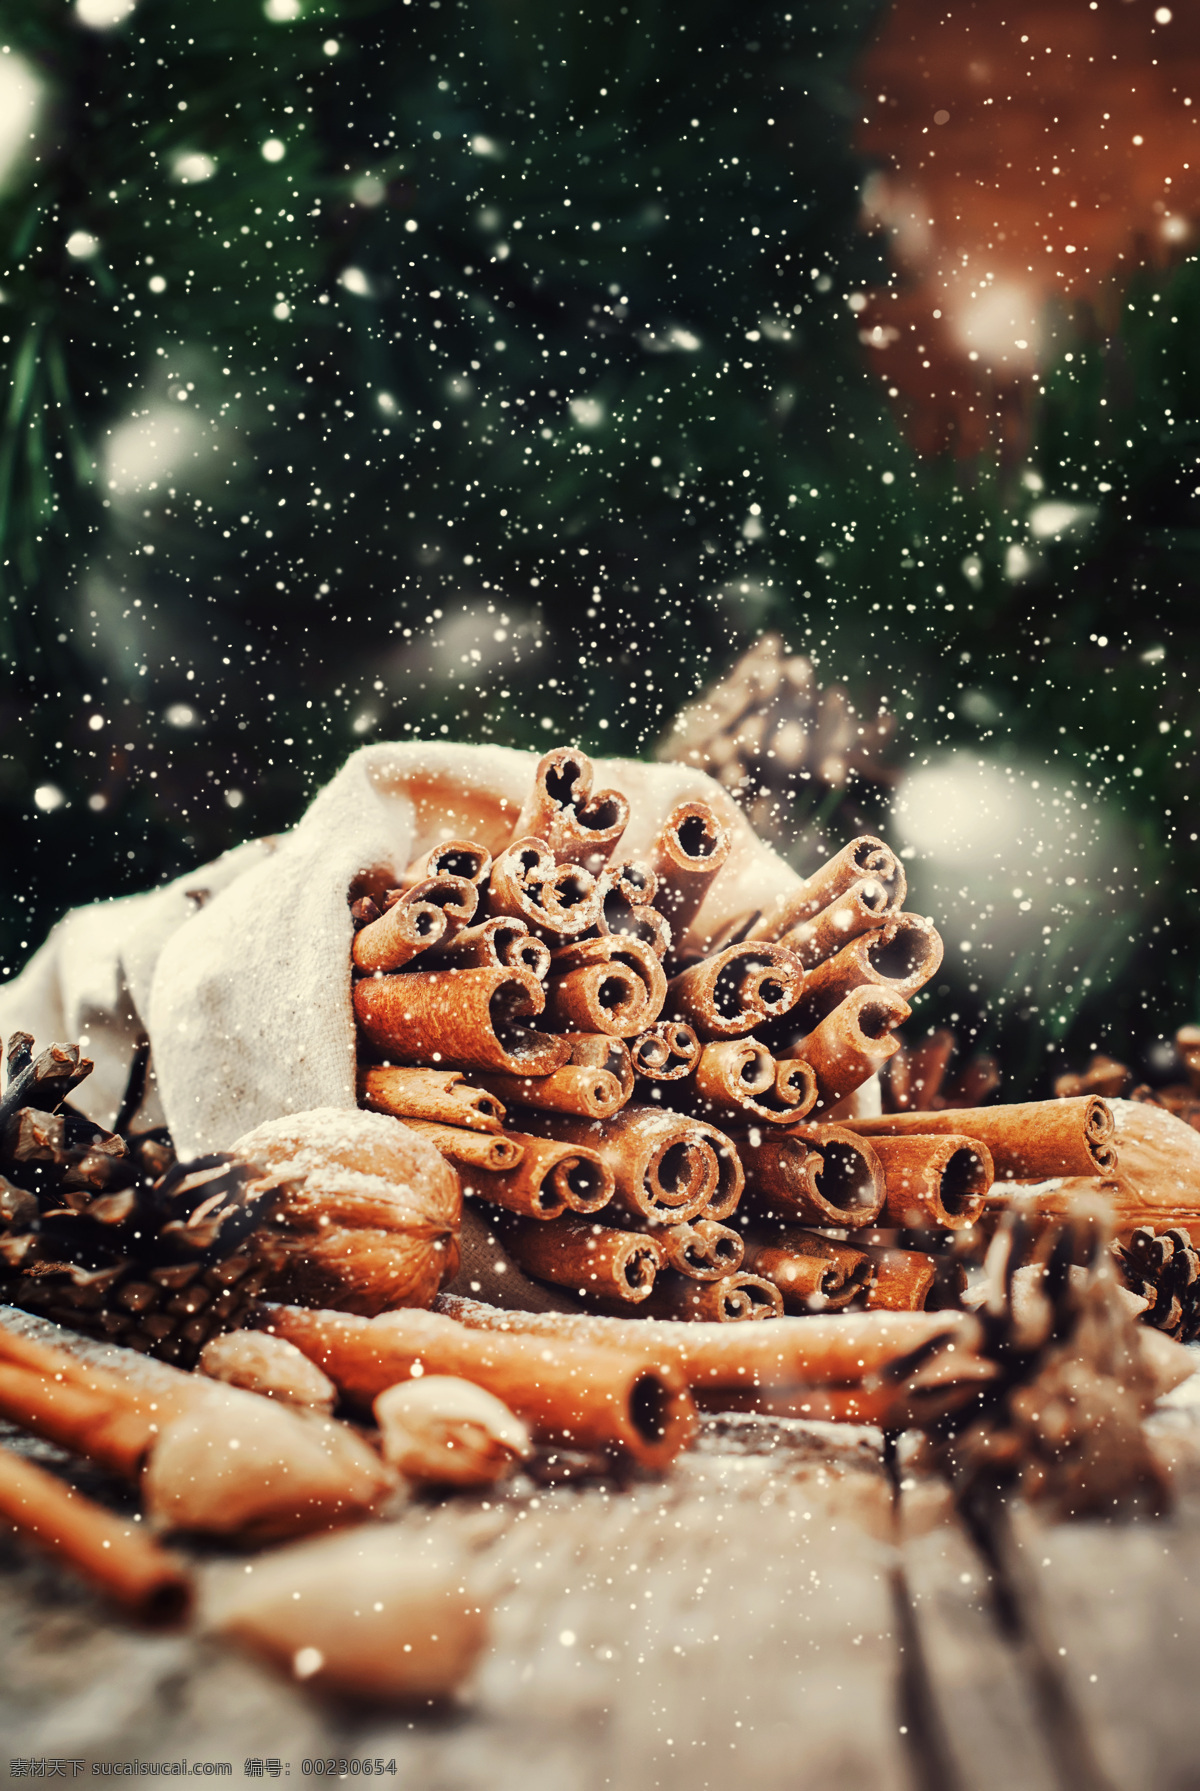 肉桂 坚果 香料 桂皮 核桃 圣诞节背景 圣诞节素材 圣诞节图片 生活百科